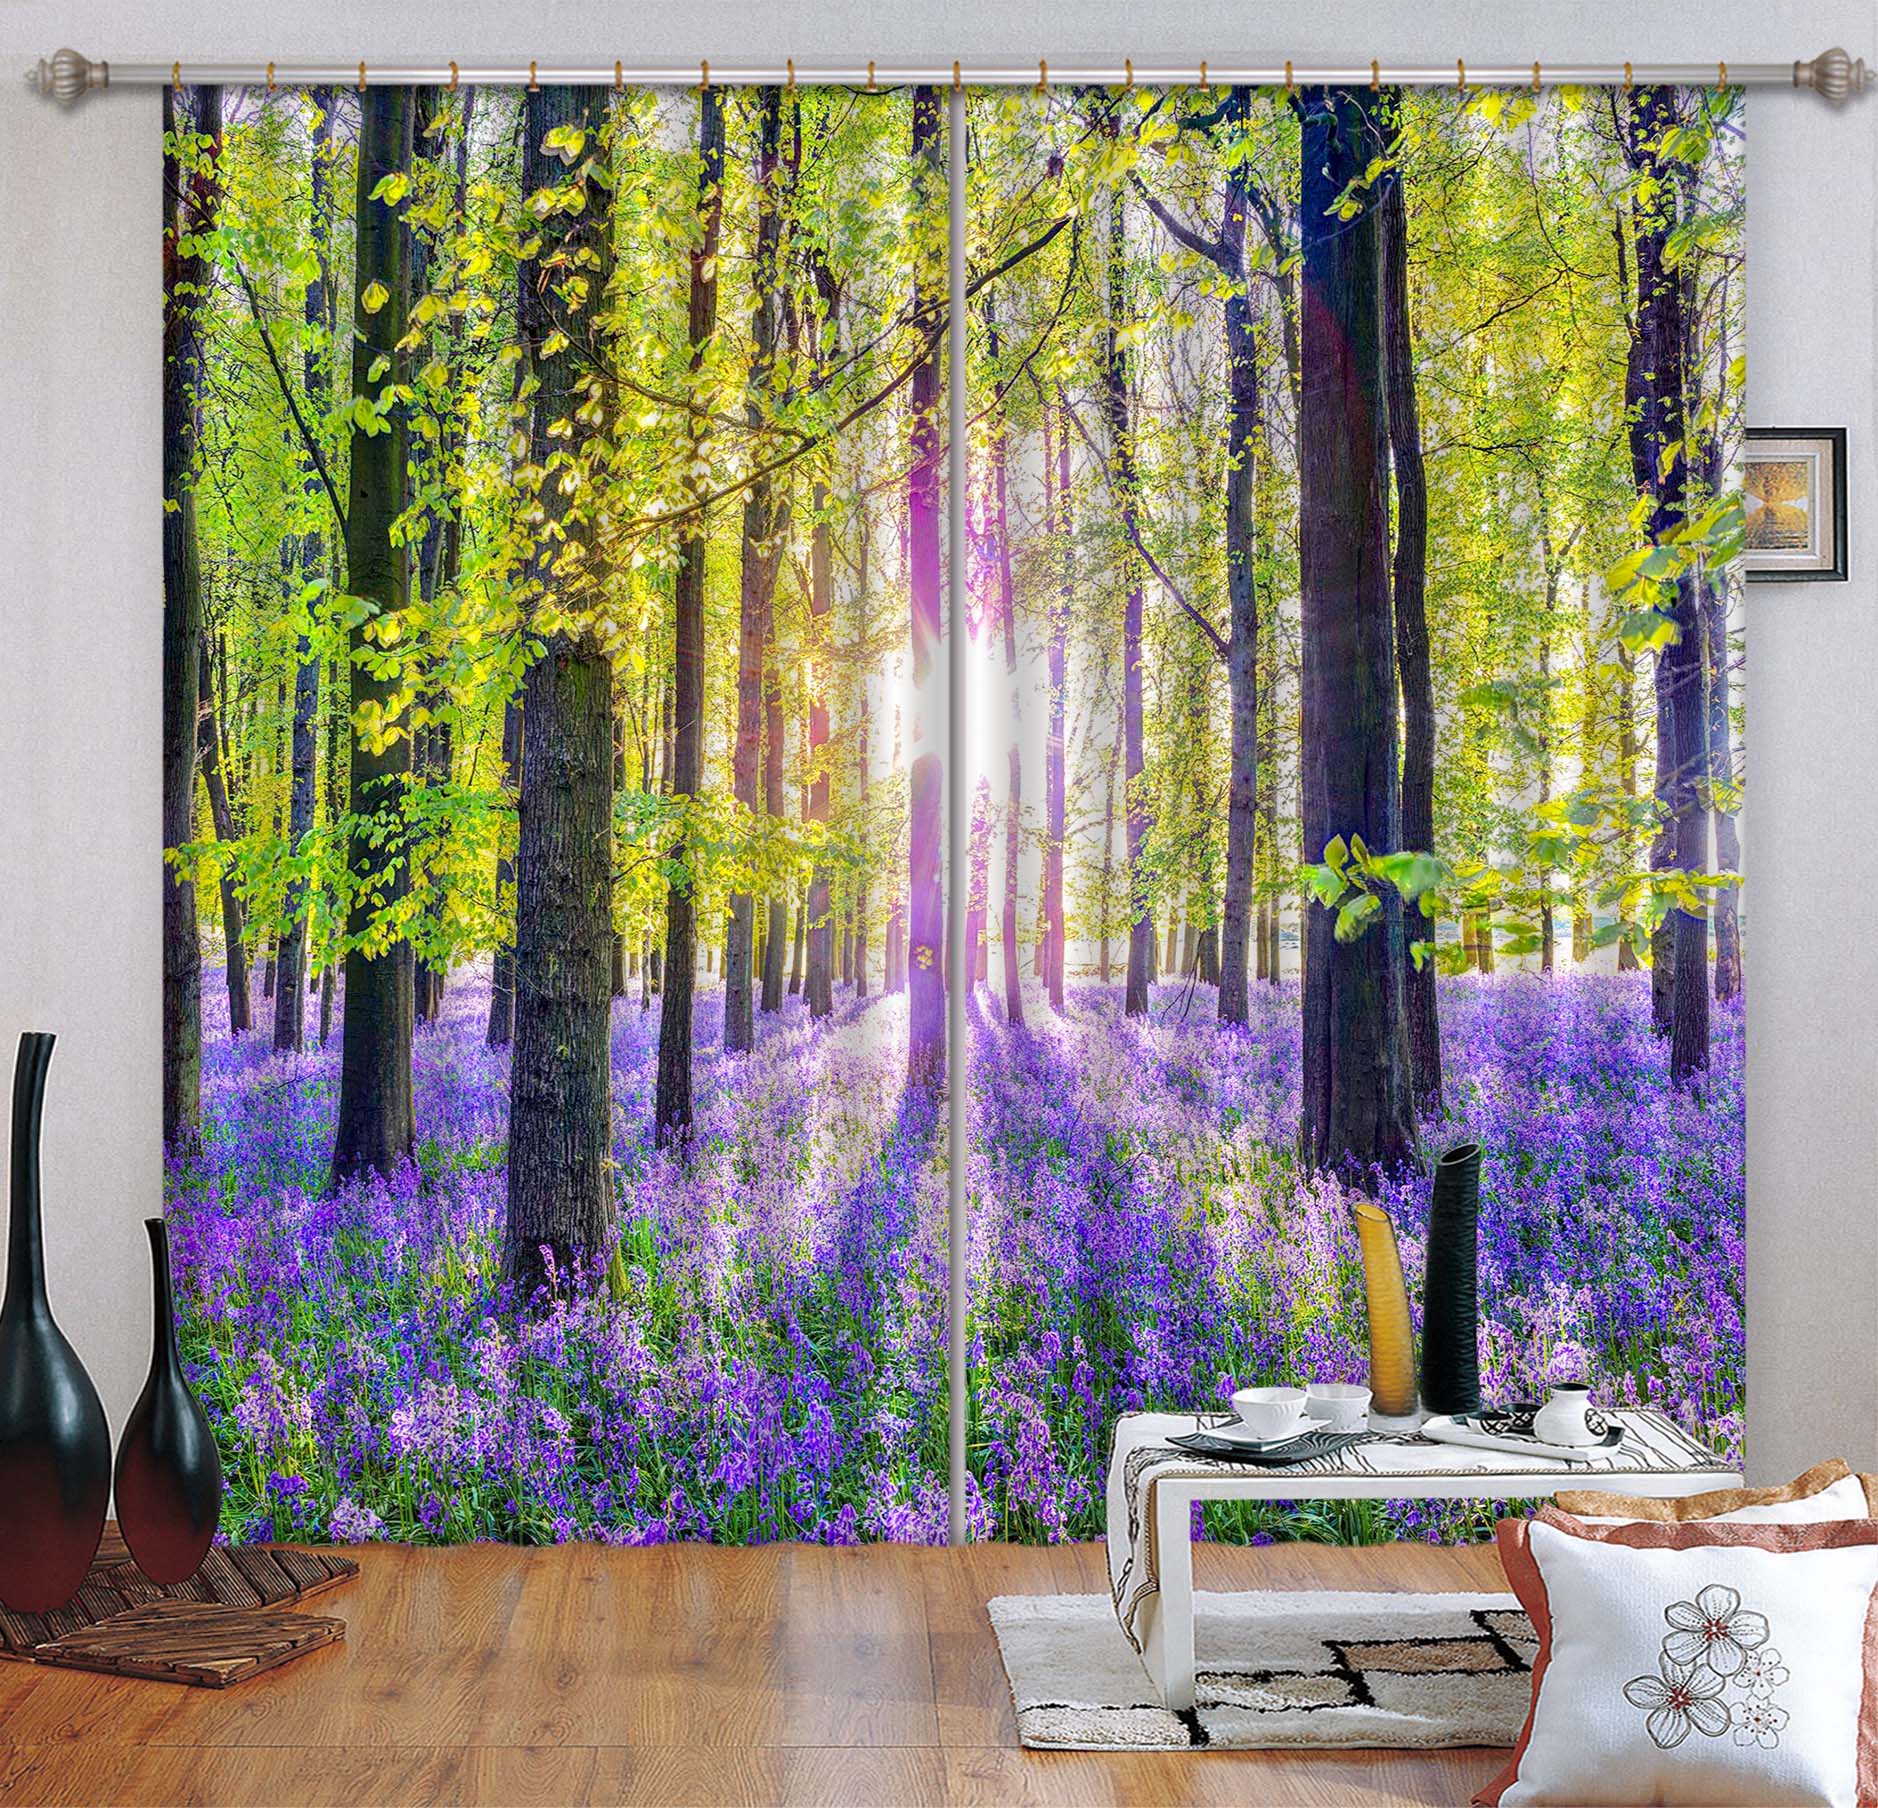 3D Purple Ocean 017 Assaf Frank Curtain Curtains Drapes